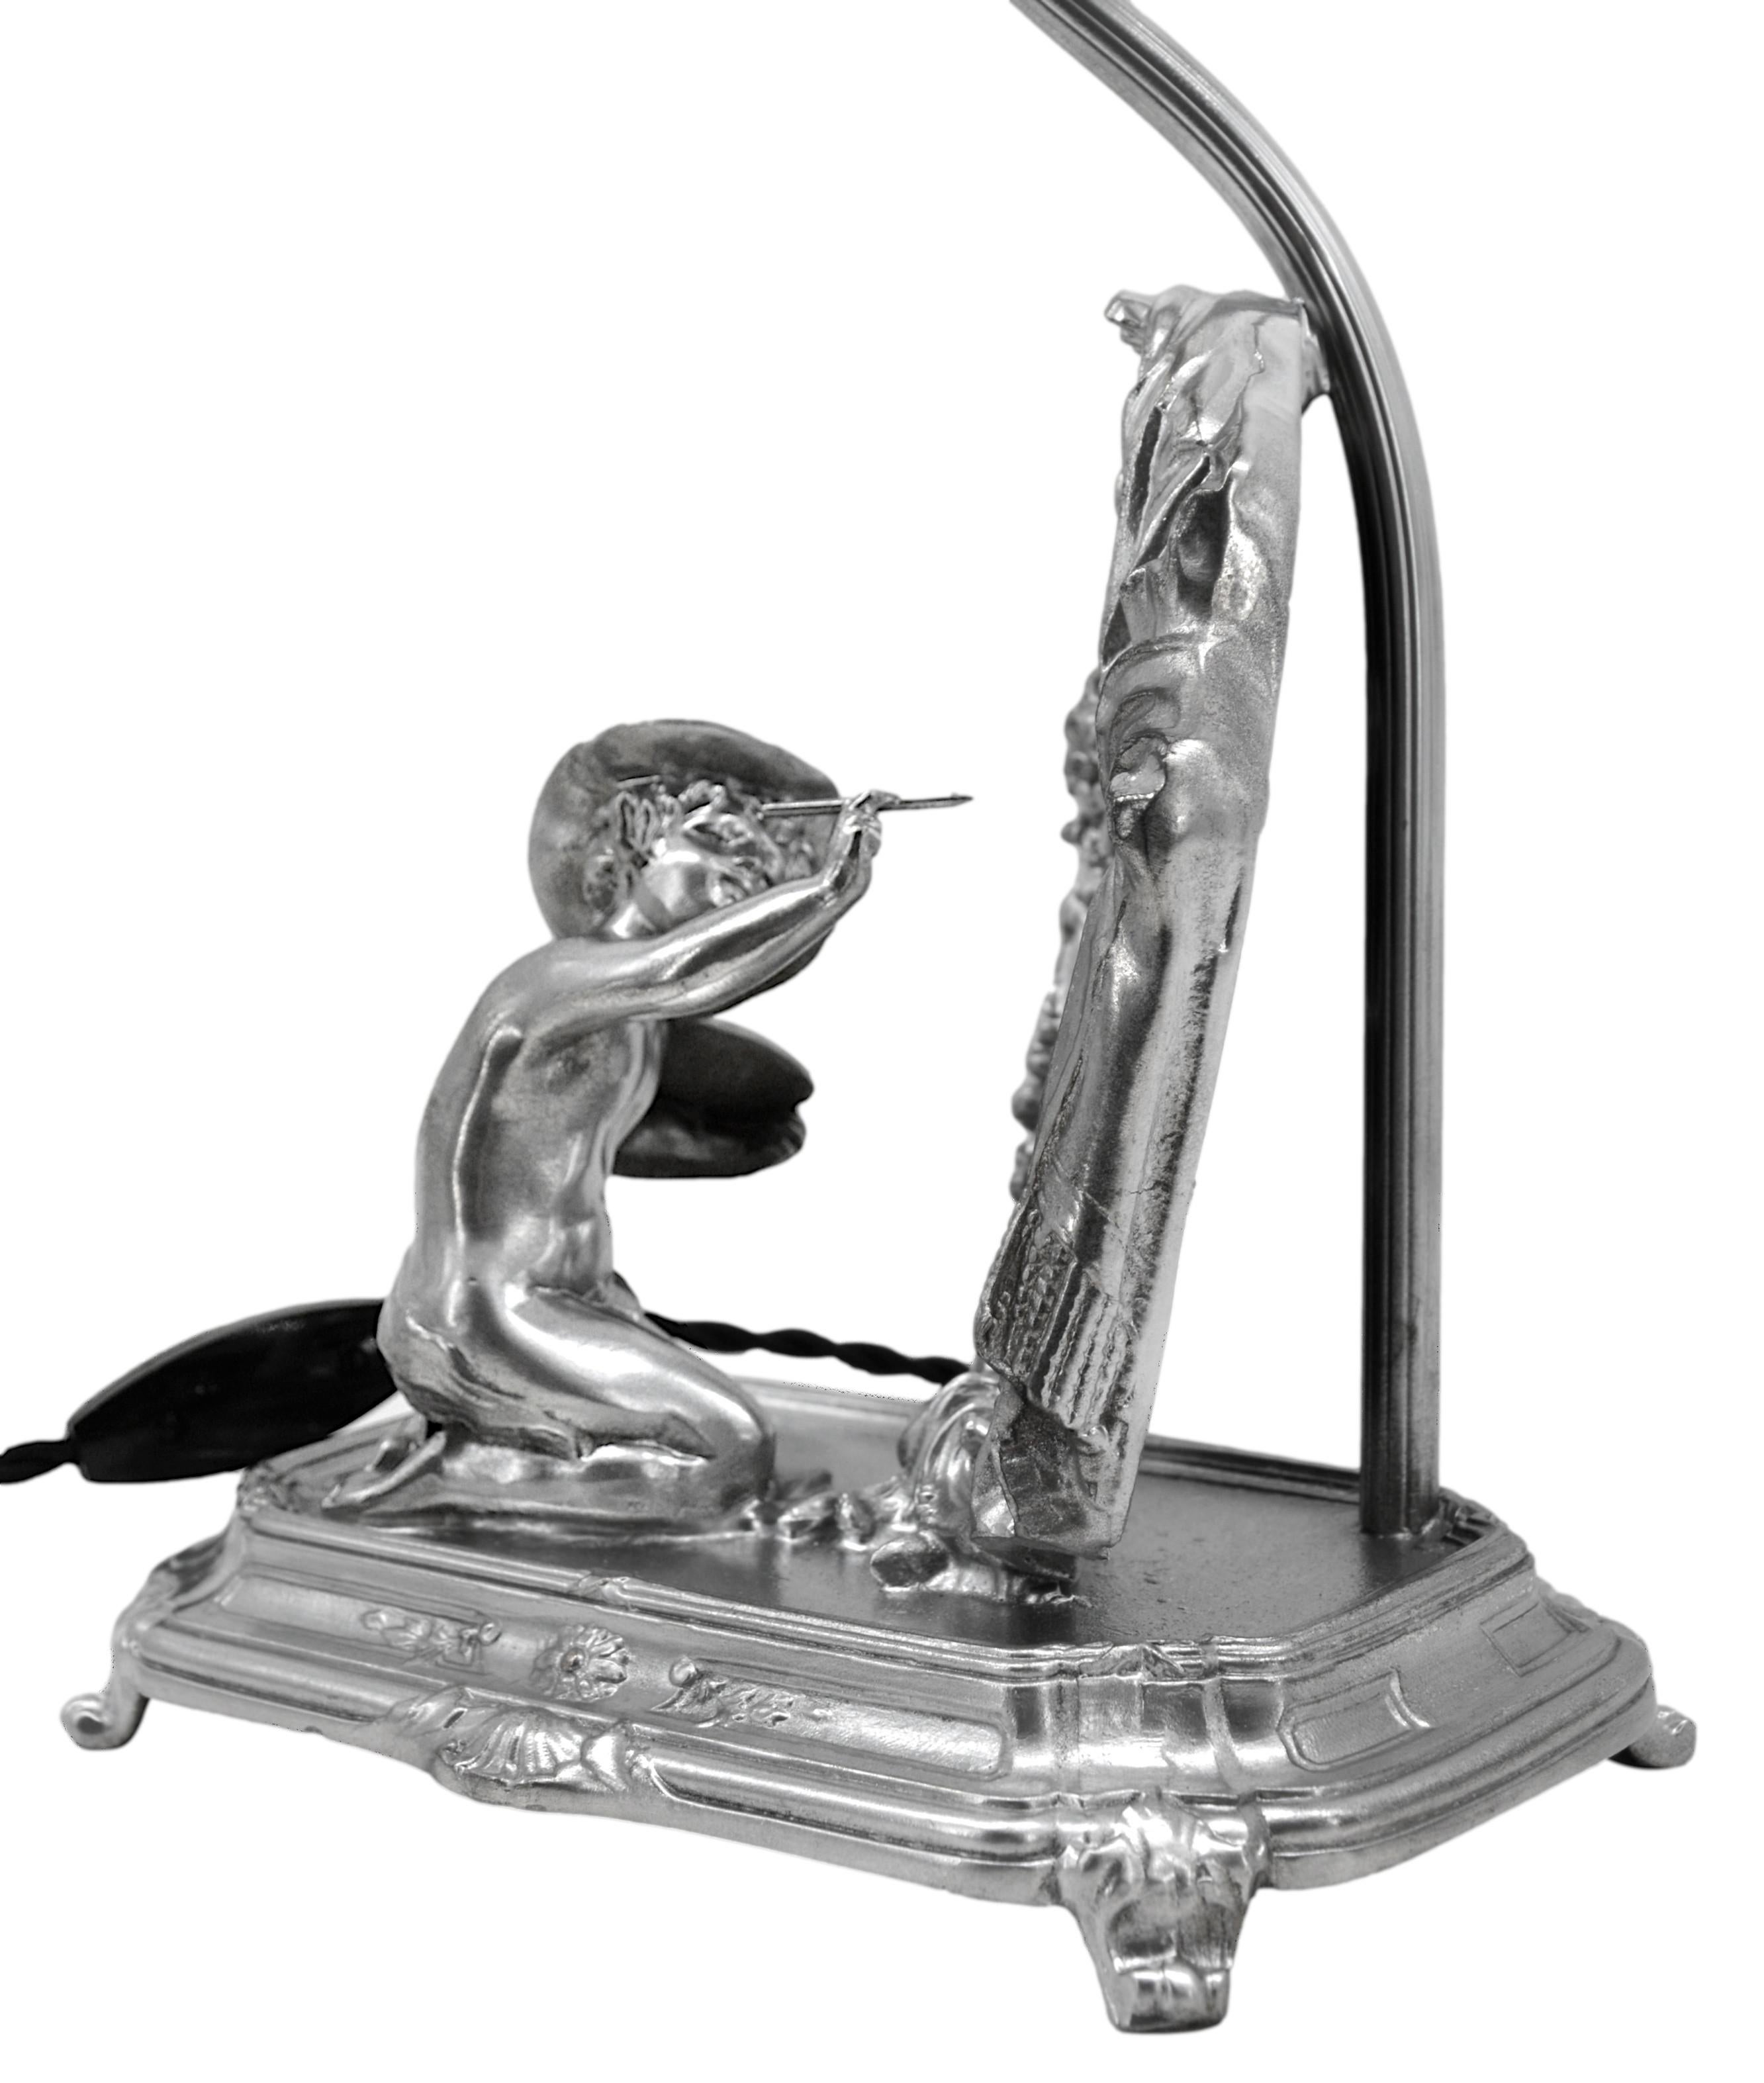 Lampe à poser qui fait également office de miroir représentant un tableau de putto. Spelter, tissu et miroir. France, vers 1900. L'abat-jour n'est pas d'époque. Mesures : Hauteur : 45,5 cm, largeur : 20,5 cm, profondeur : 14 cm. Très bon état. Livré